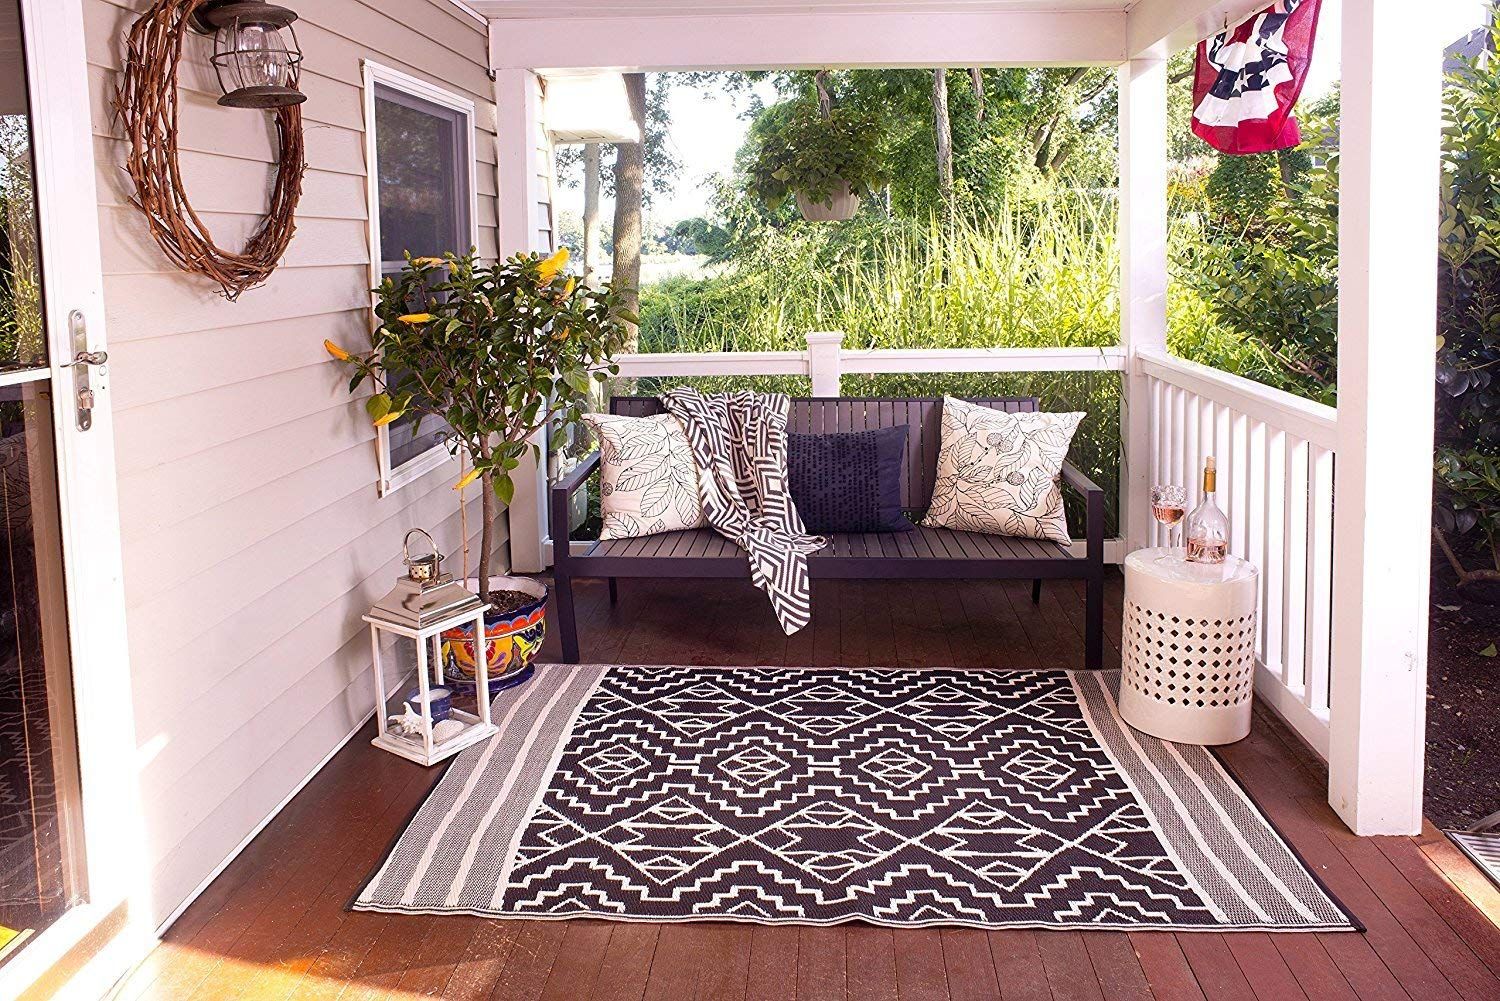 9 Best Indoor Outdoor Rugs 2019 The, Outdoor Carpet Runner For Balcony